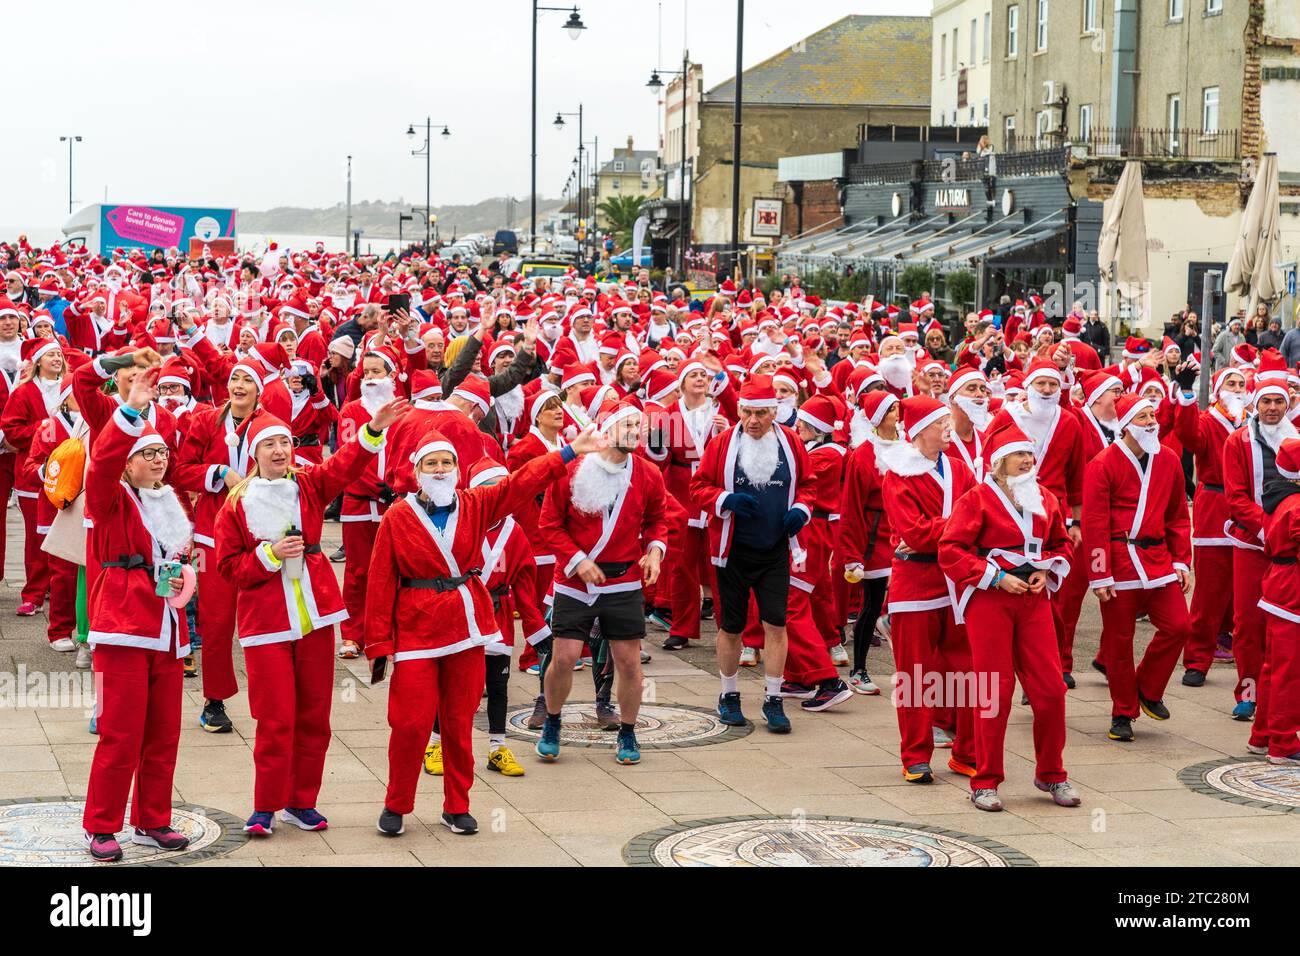 Plusieurs centaines de personnes toutes vêtues de vêtements rouges du Père Noël debout en plein air sur le front de mer à Herne Bay avant de prendre part à une course caritative, 'Santa's in the Bay' pour le Pilgrims Hospice. Banque D'Images